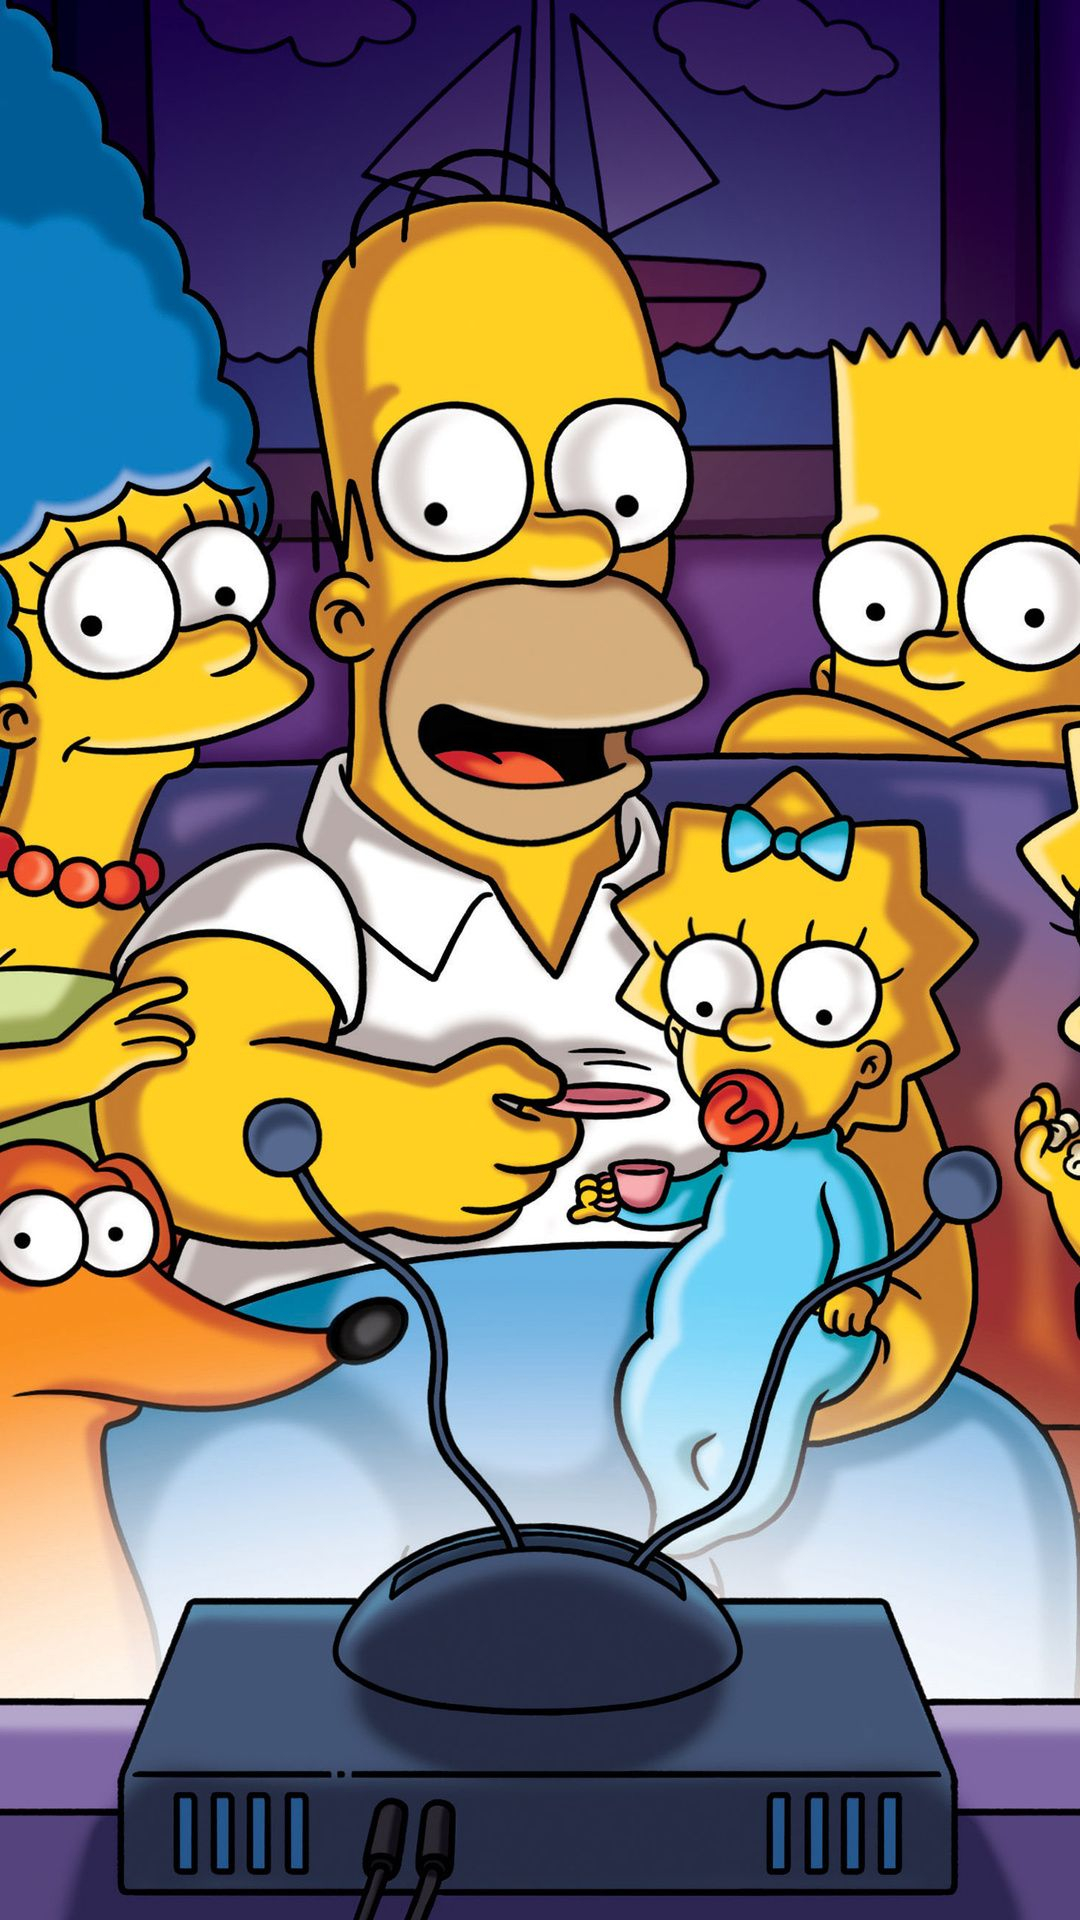 1080x1920 The Simpsons Wallpapers [Desktop,iPhone,